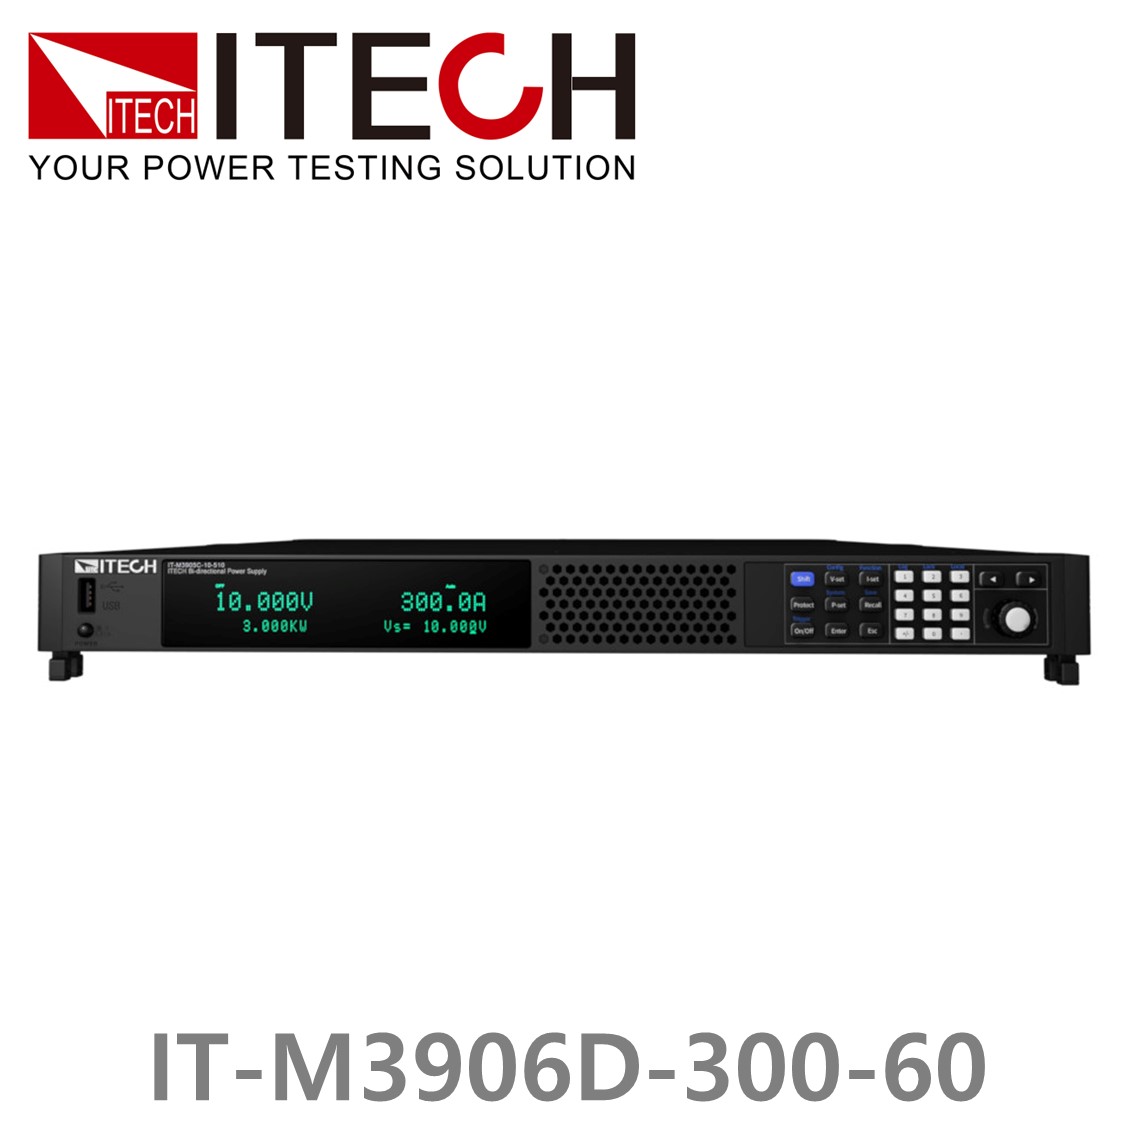 [ ITECH ] IT-M3906D-300-60 양방향 프로그래머블 DC전원공급기, DC파워서플라이